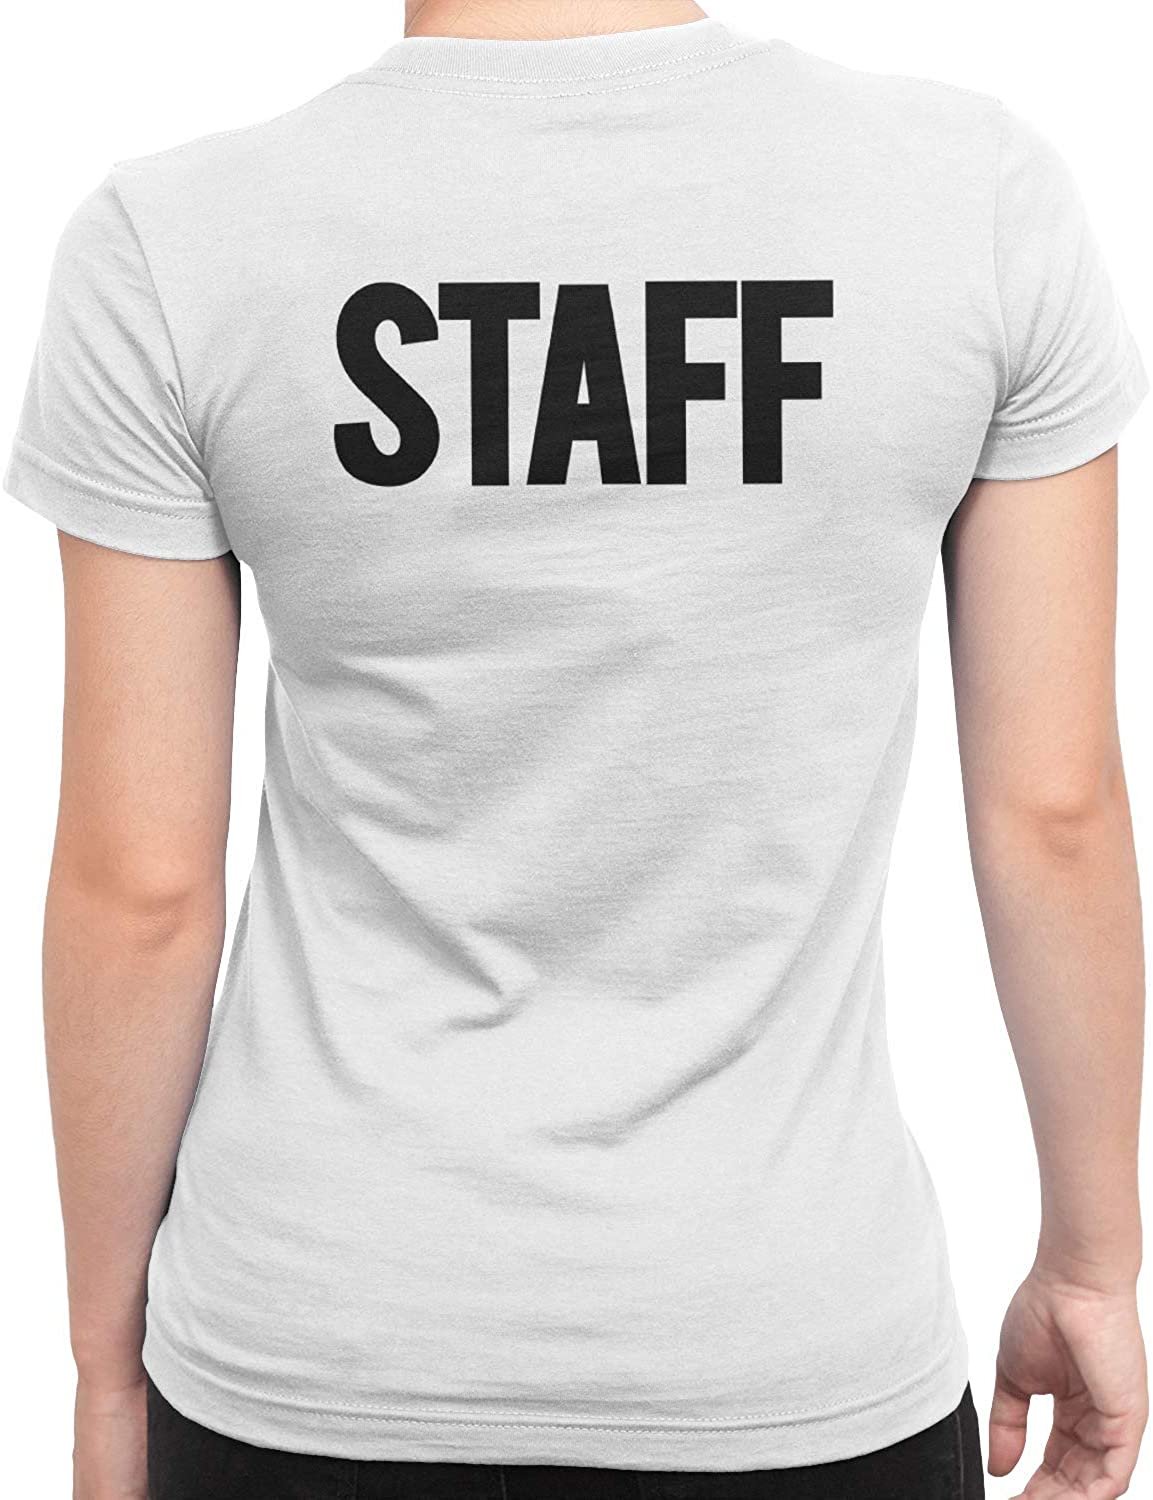 T-shirt à manches courtes pour femmes du personnel (conception solide, blanc)